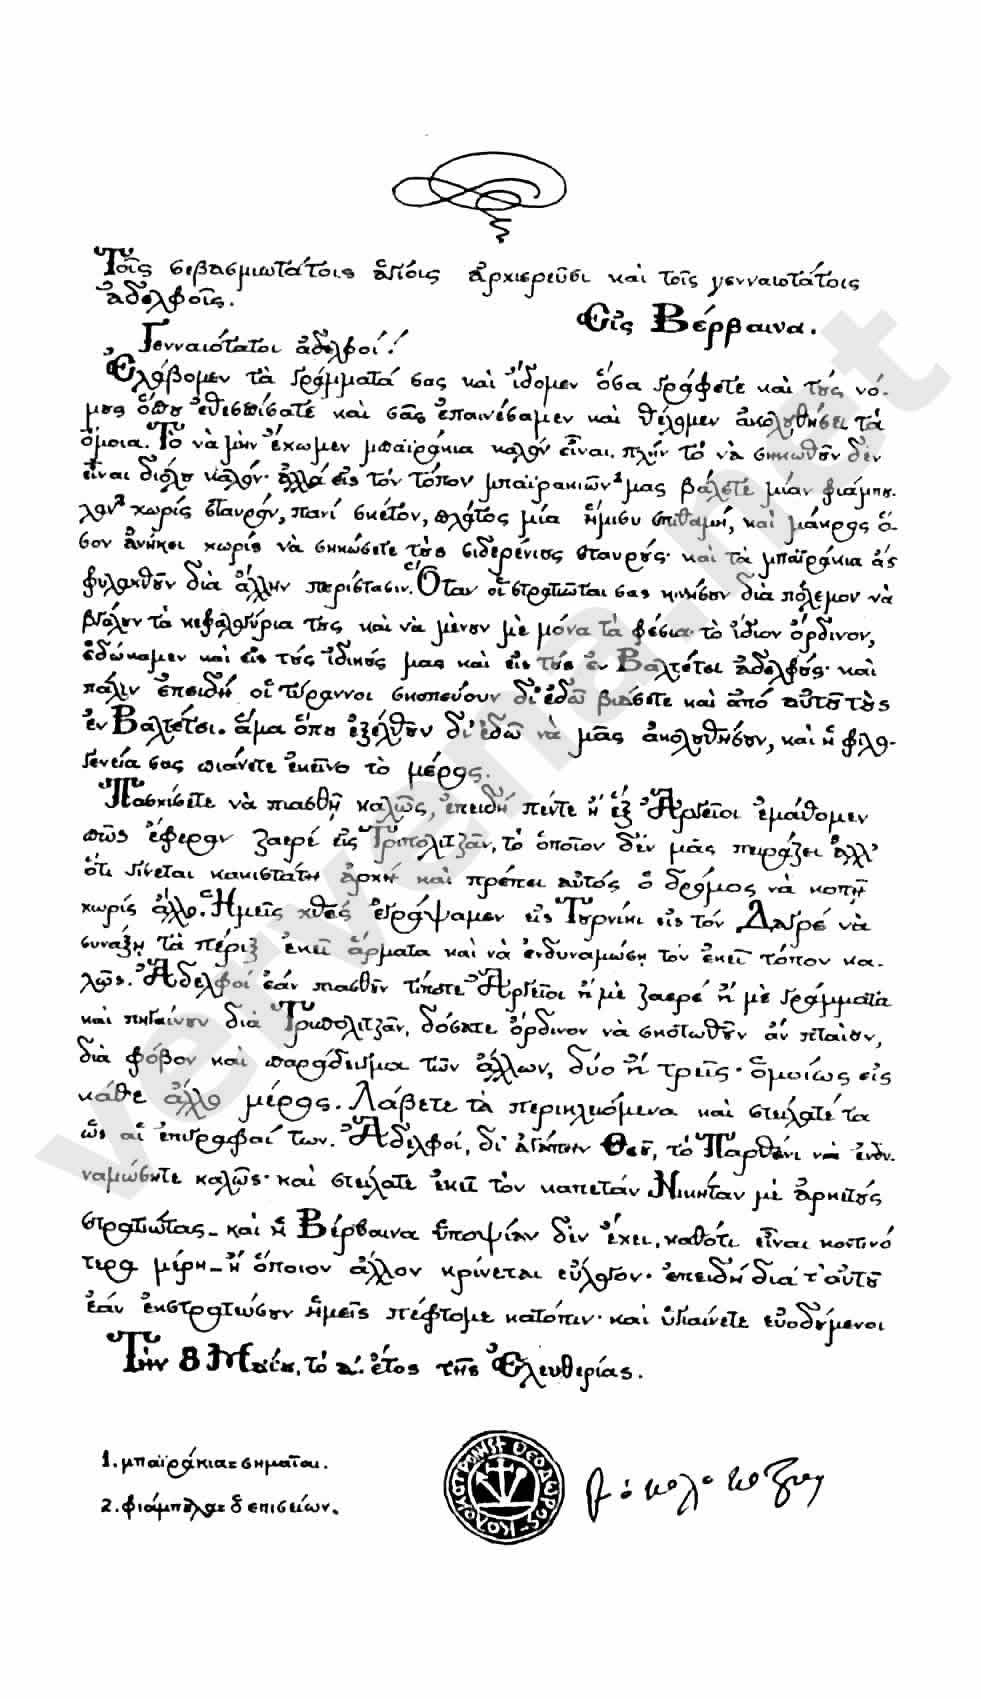 Επιστολή Κολοκοτρώνη προς Αδελφούς Εις Βέρβενα, 8 Μαίου Ετος Ελευθερίας